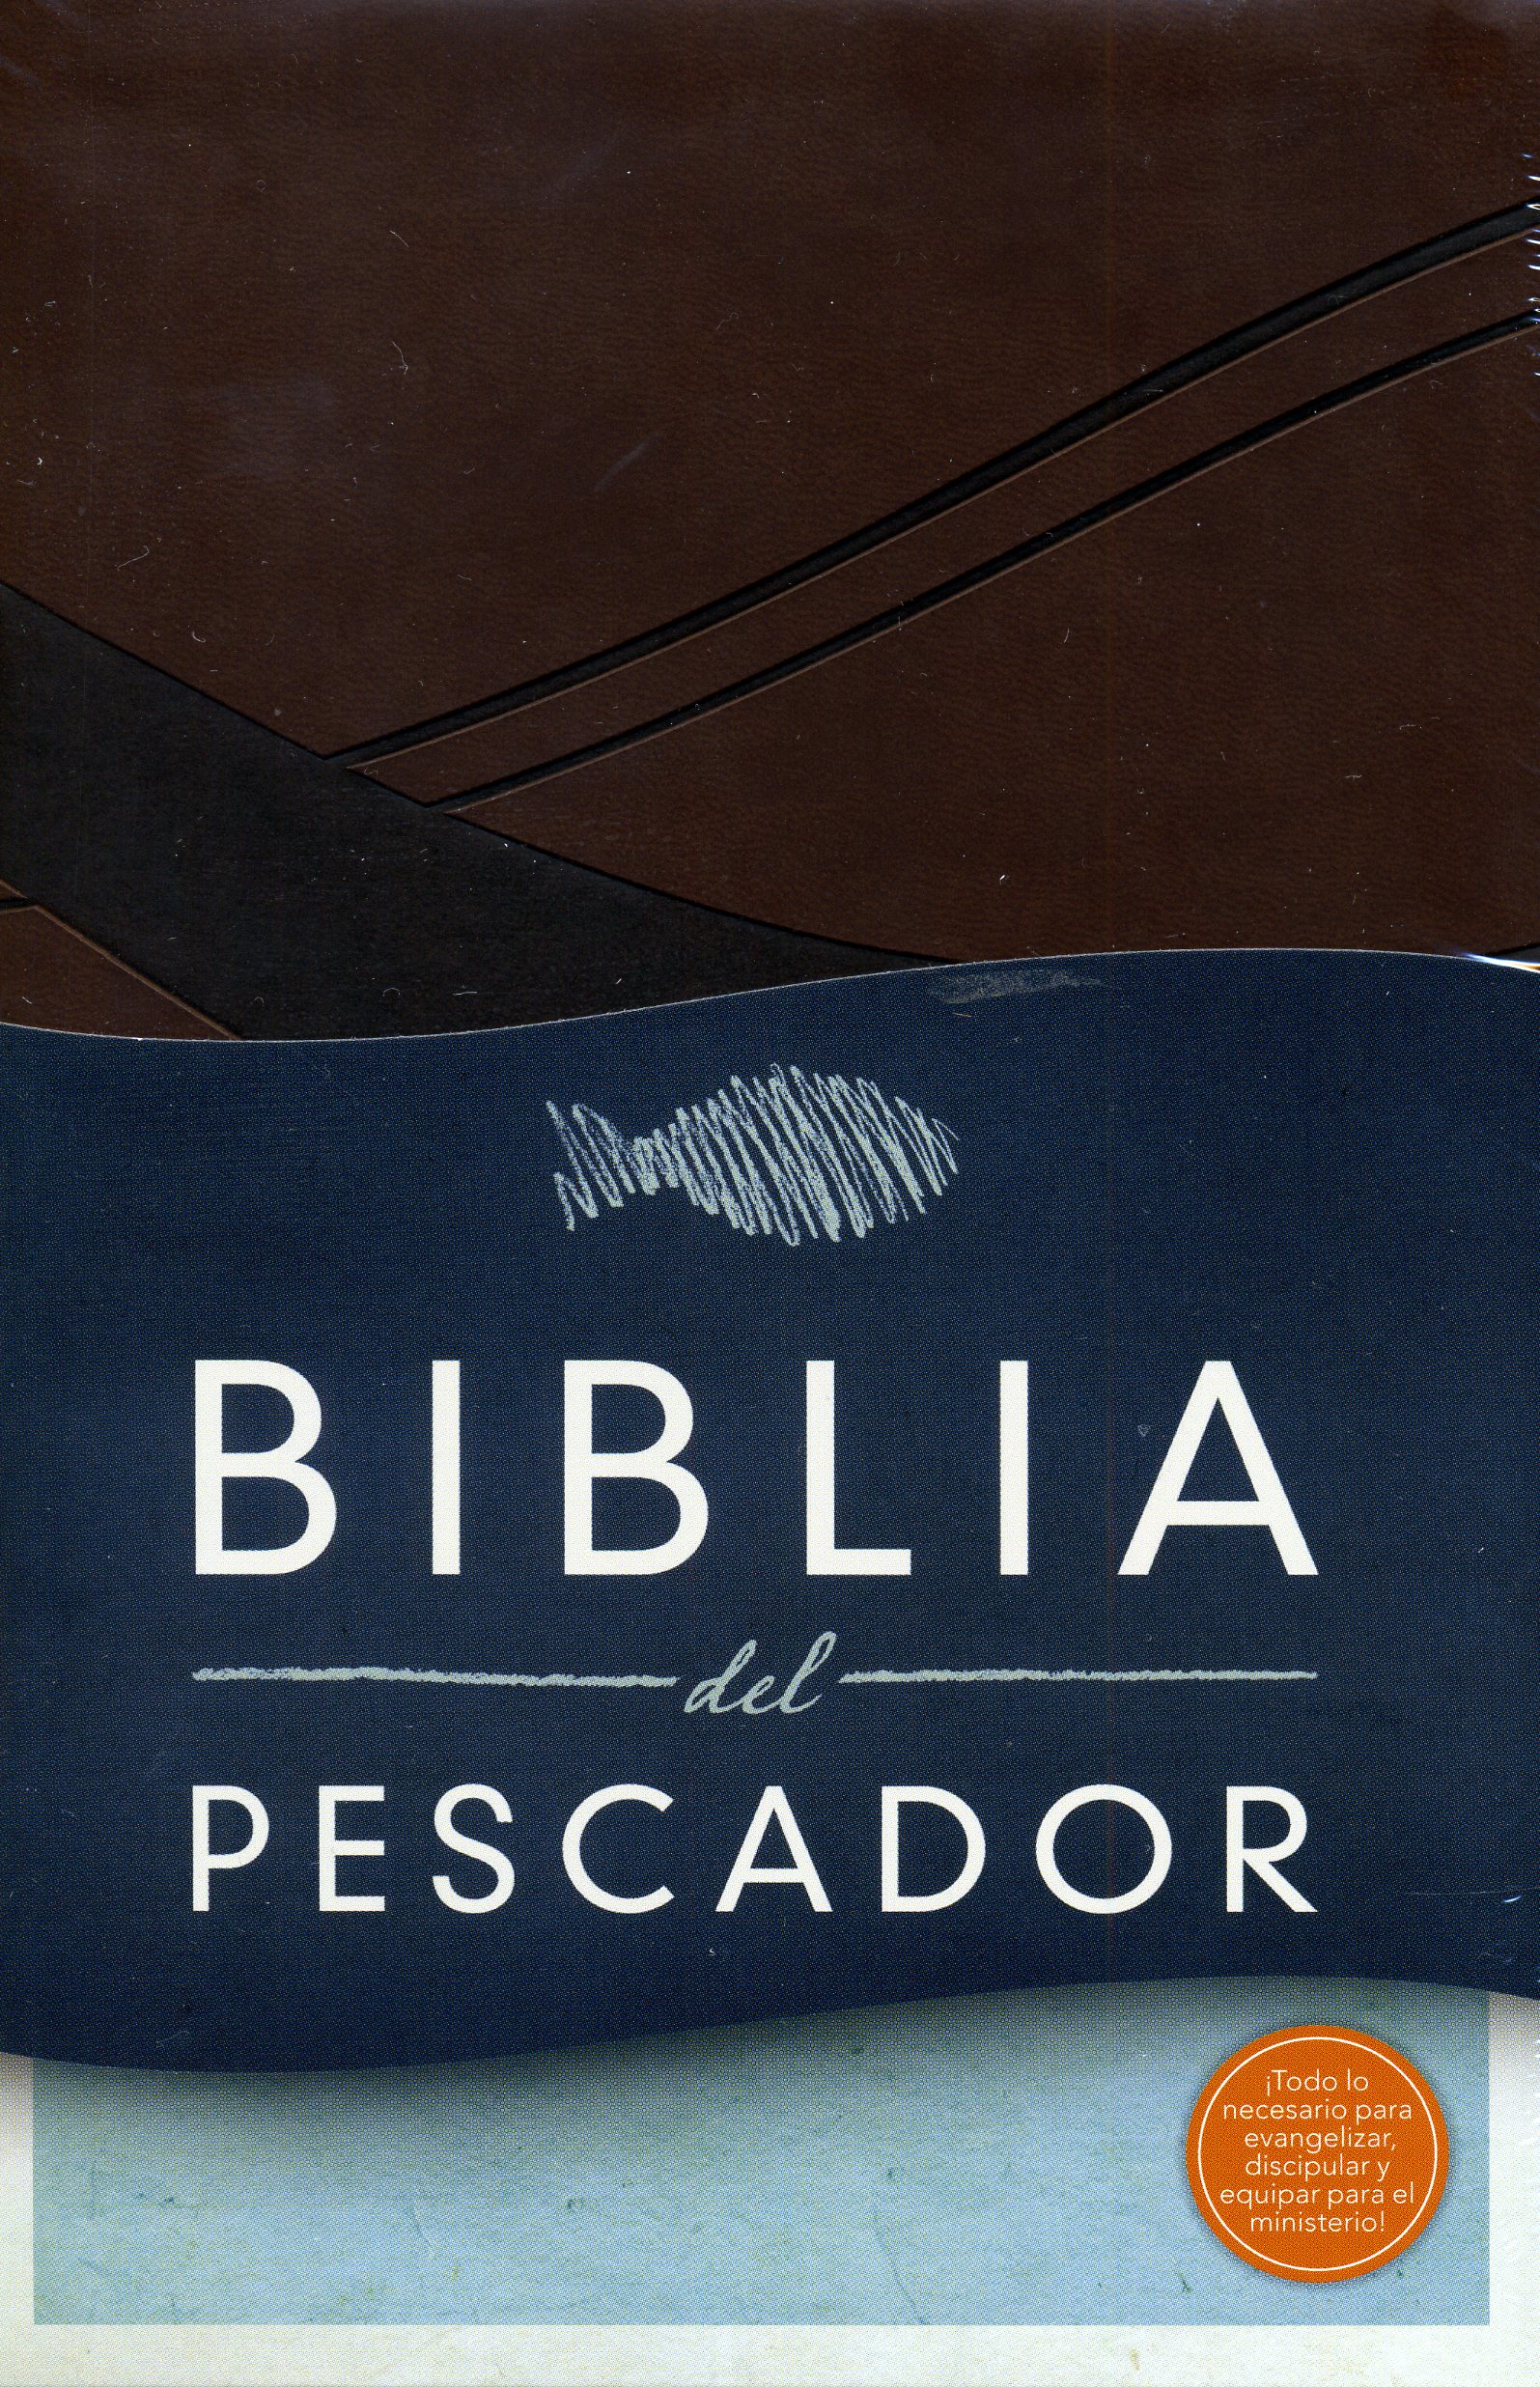 Biblia del pescador - Chocolate